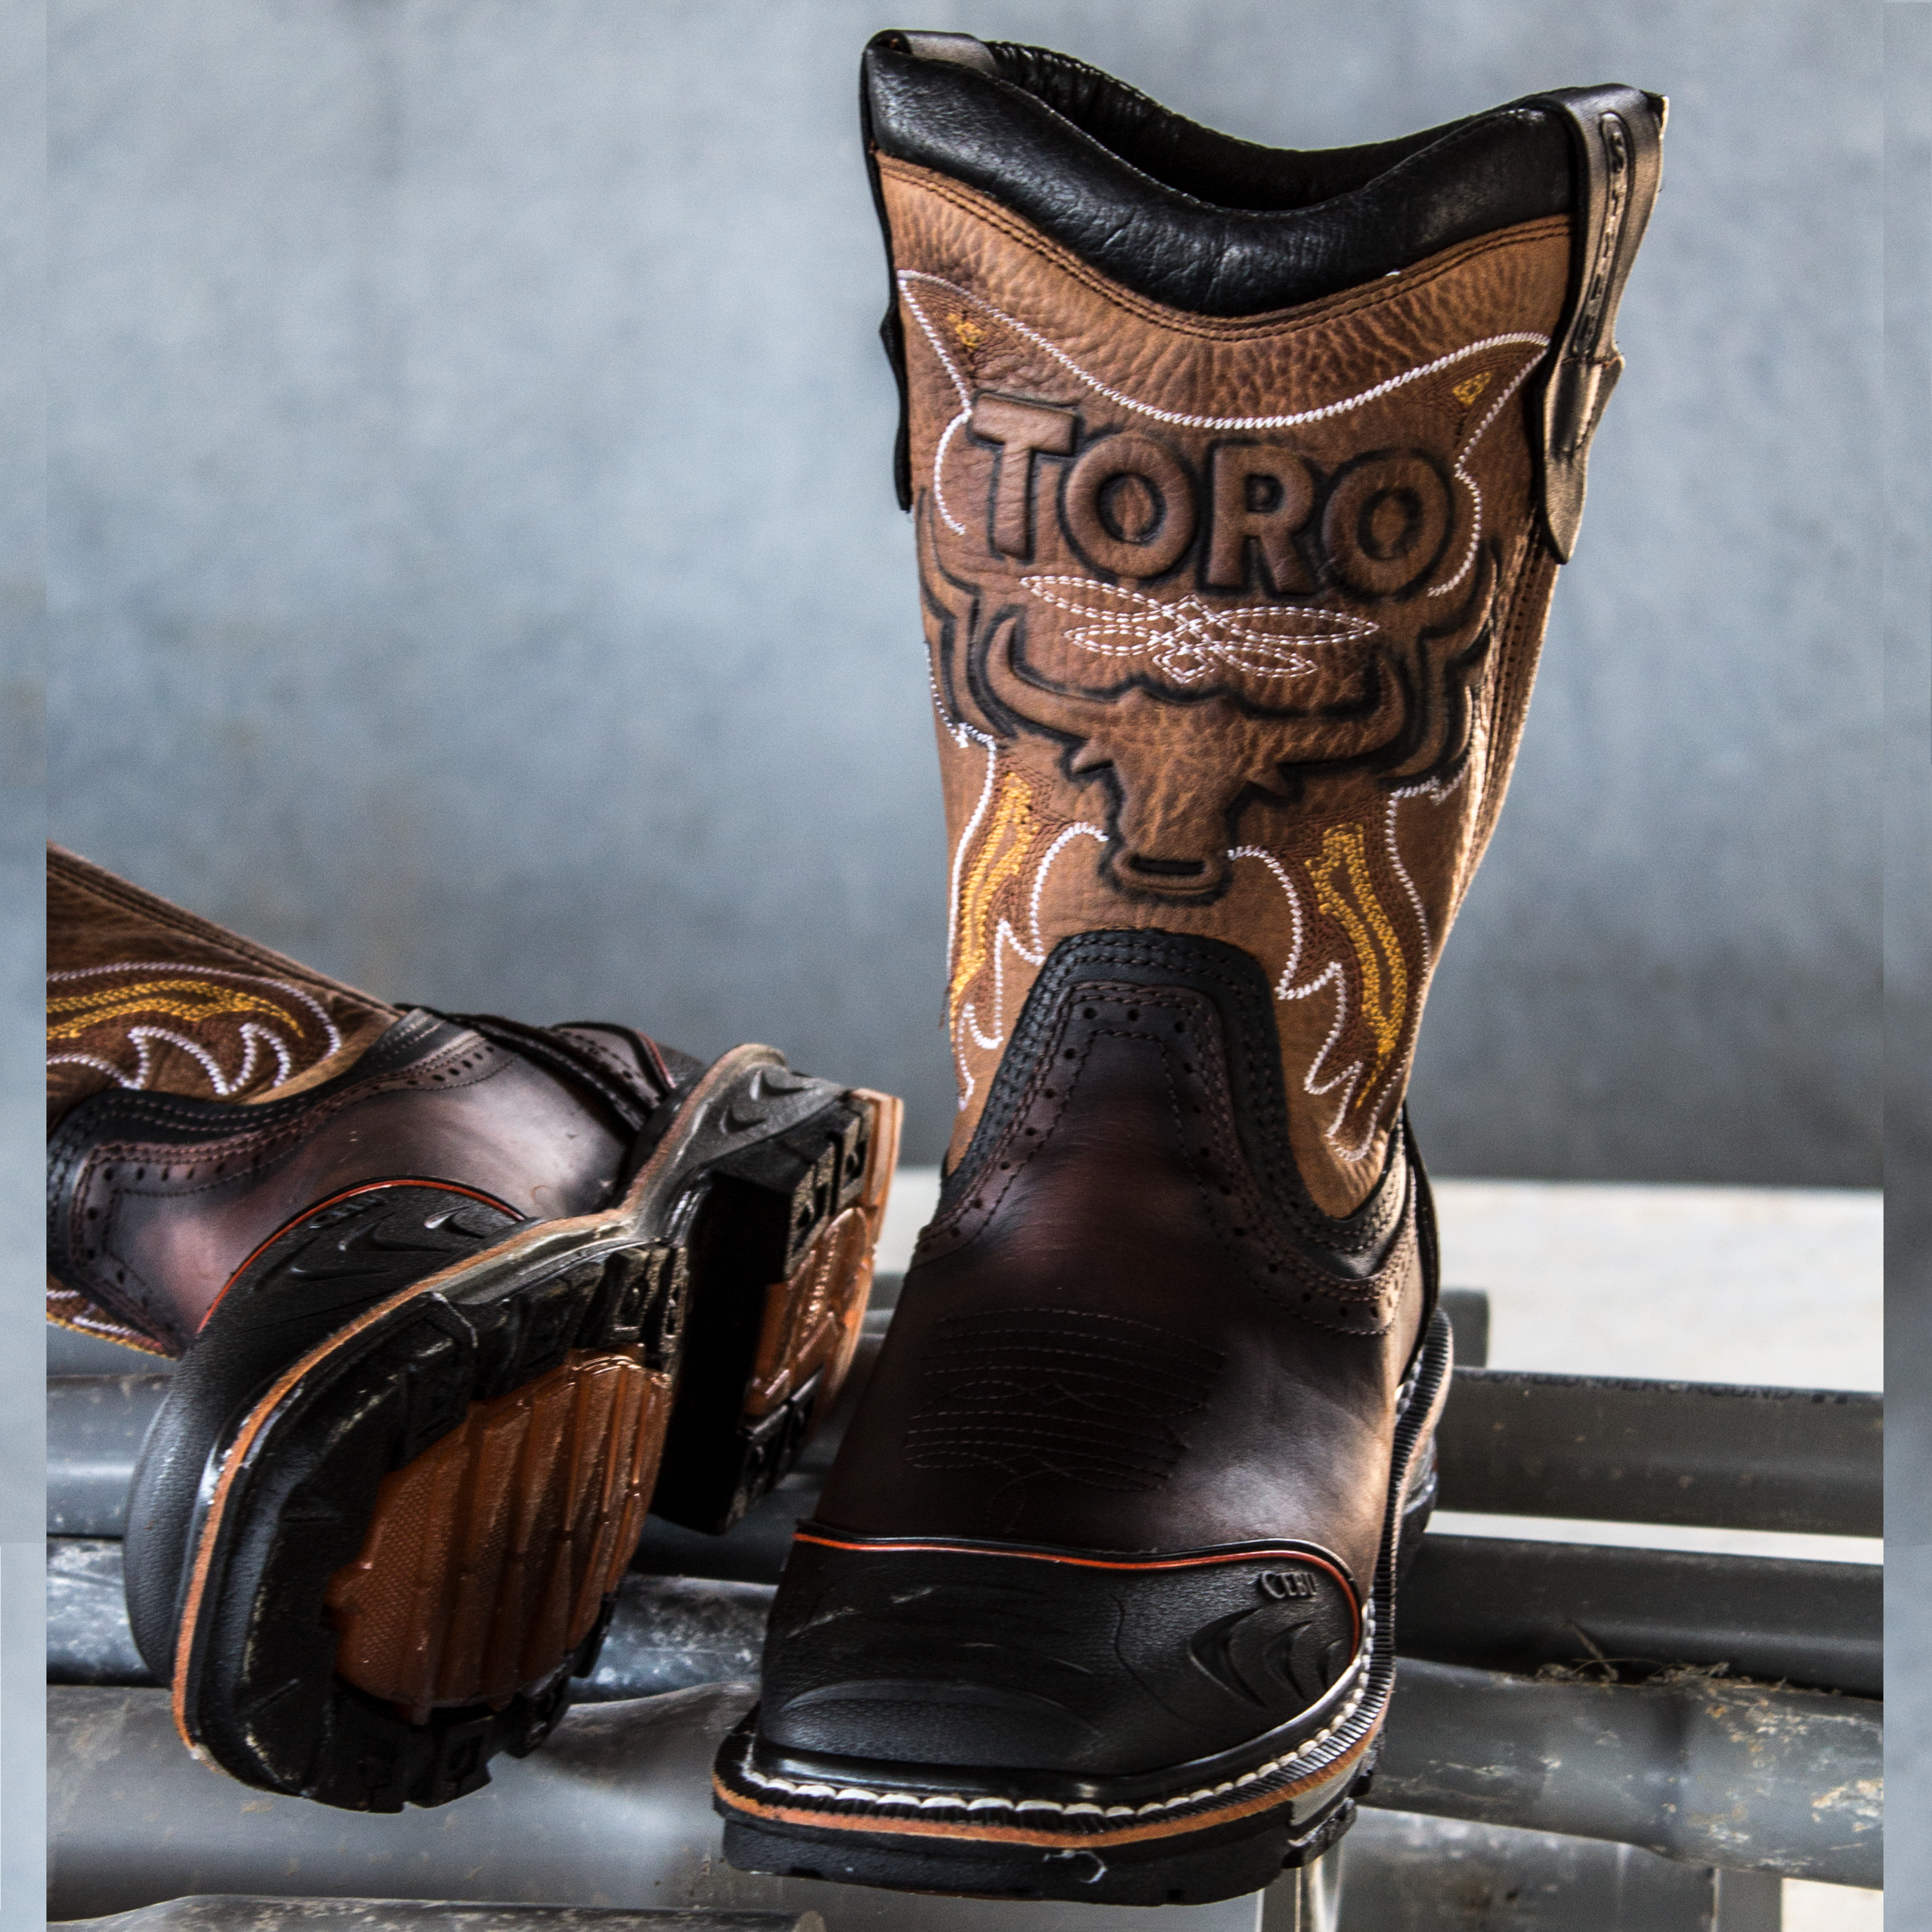 Botas de trabajo de vaquero - Punta cuadrada Toro Bravo Boots - Punta de acero, punta material compuesto e impresión – Cebu boots